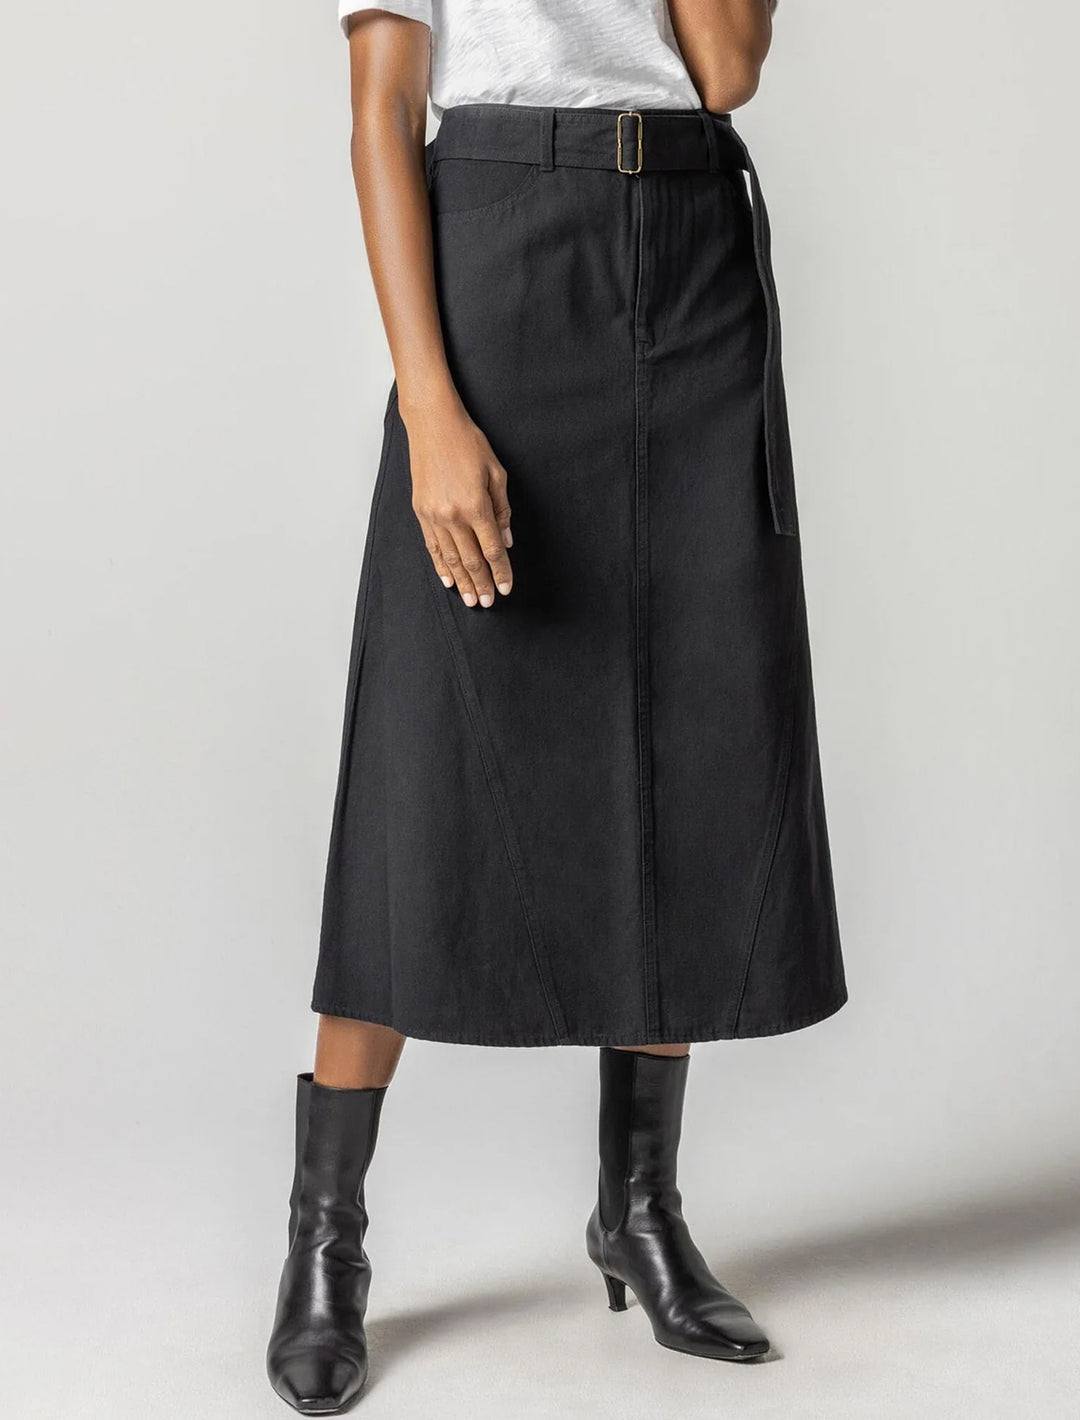 Model wearing Lilla P.'s jean skirt in black.